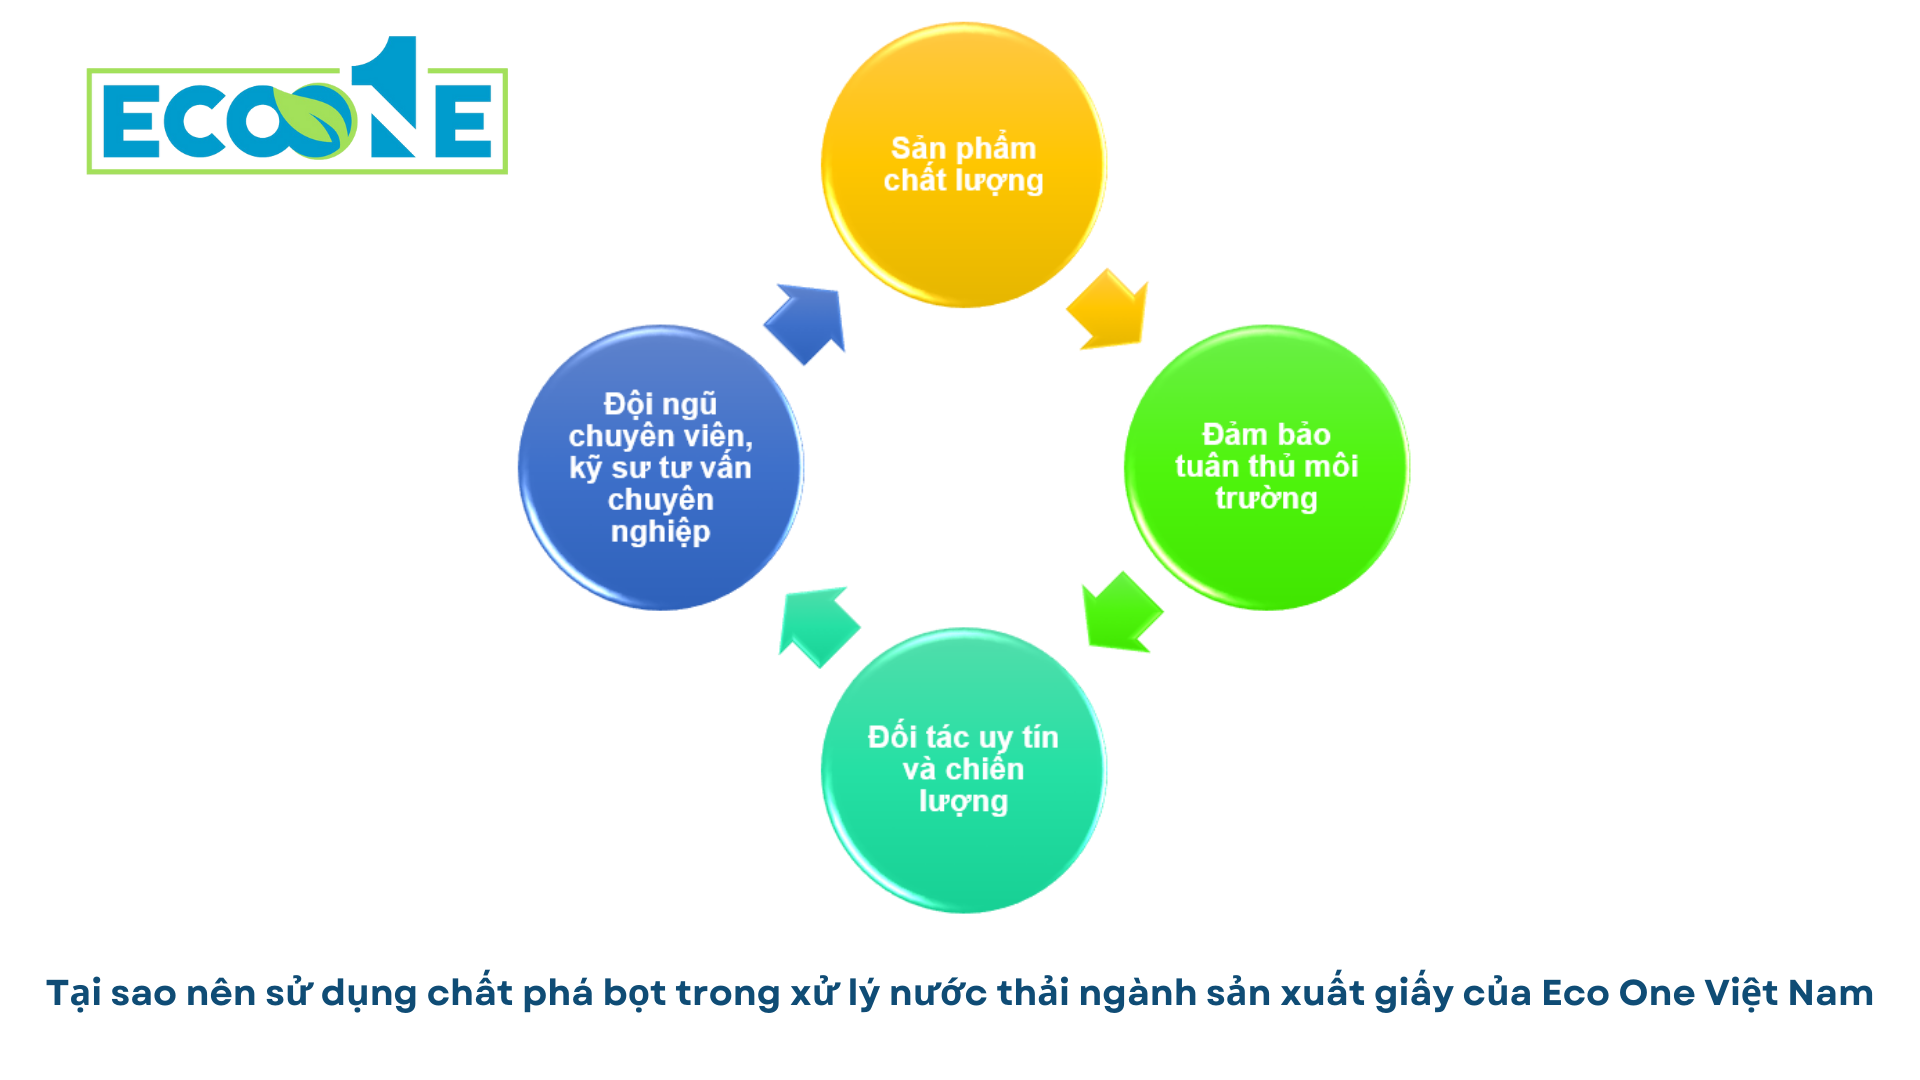 Tại sao nên sử dụng chất phá bọt trong xử lý nước thải ngành sản xuất giấy của Eco One Việt Nam